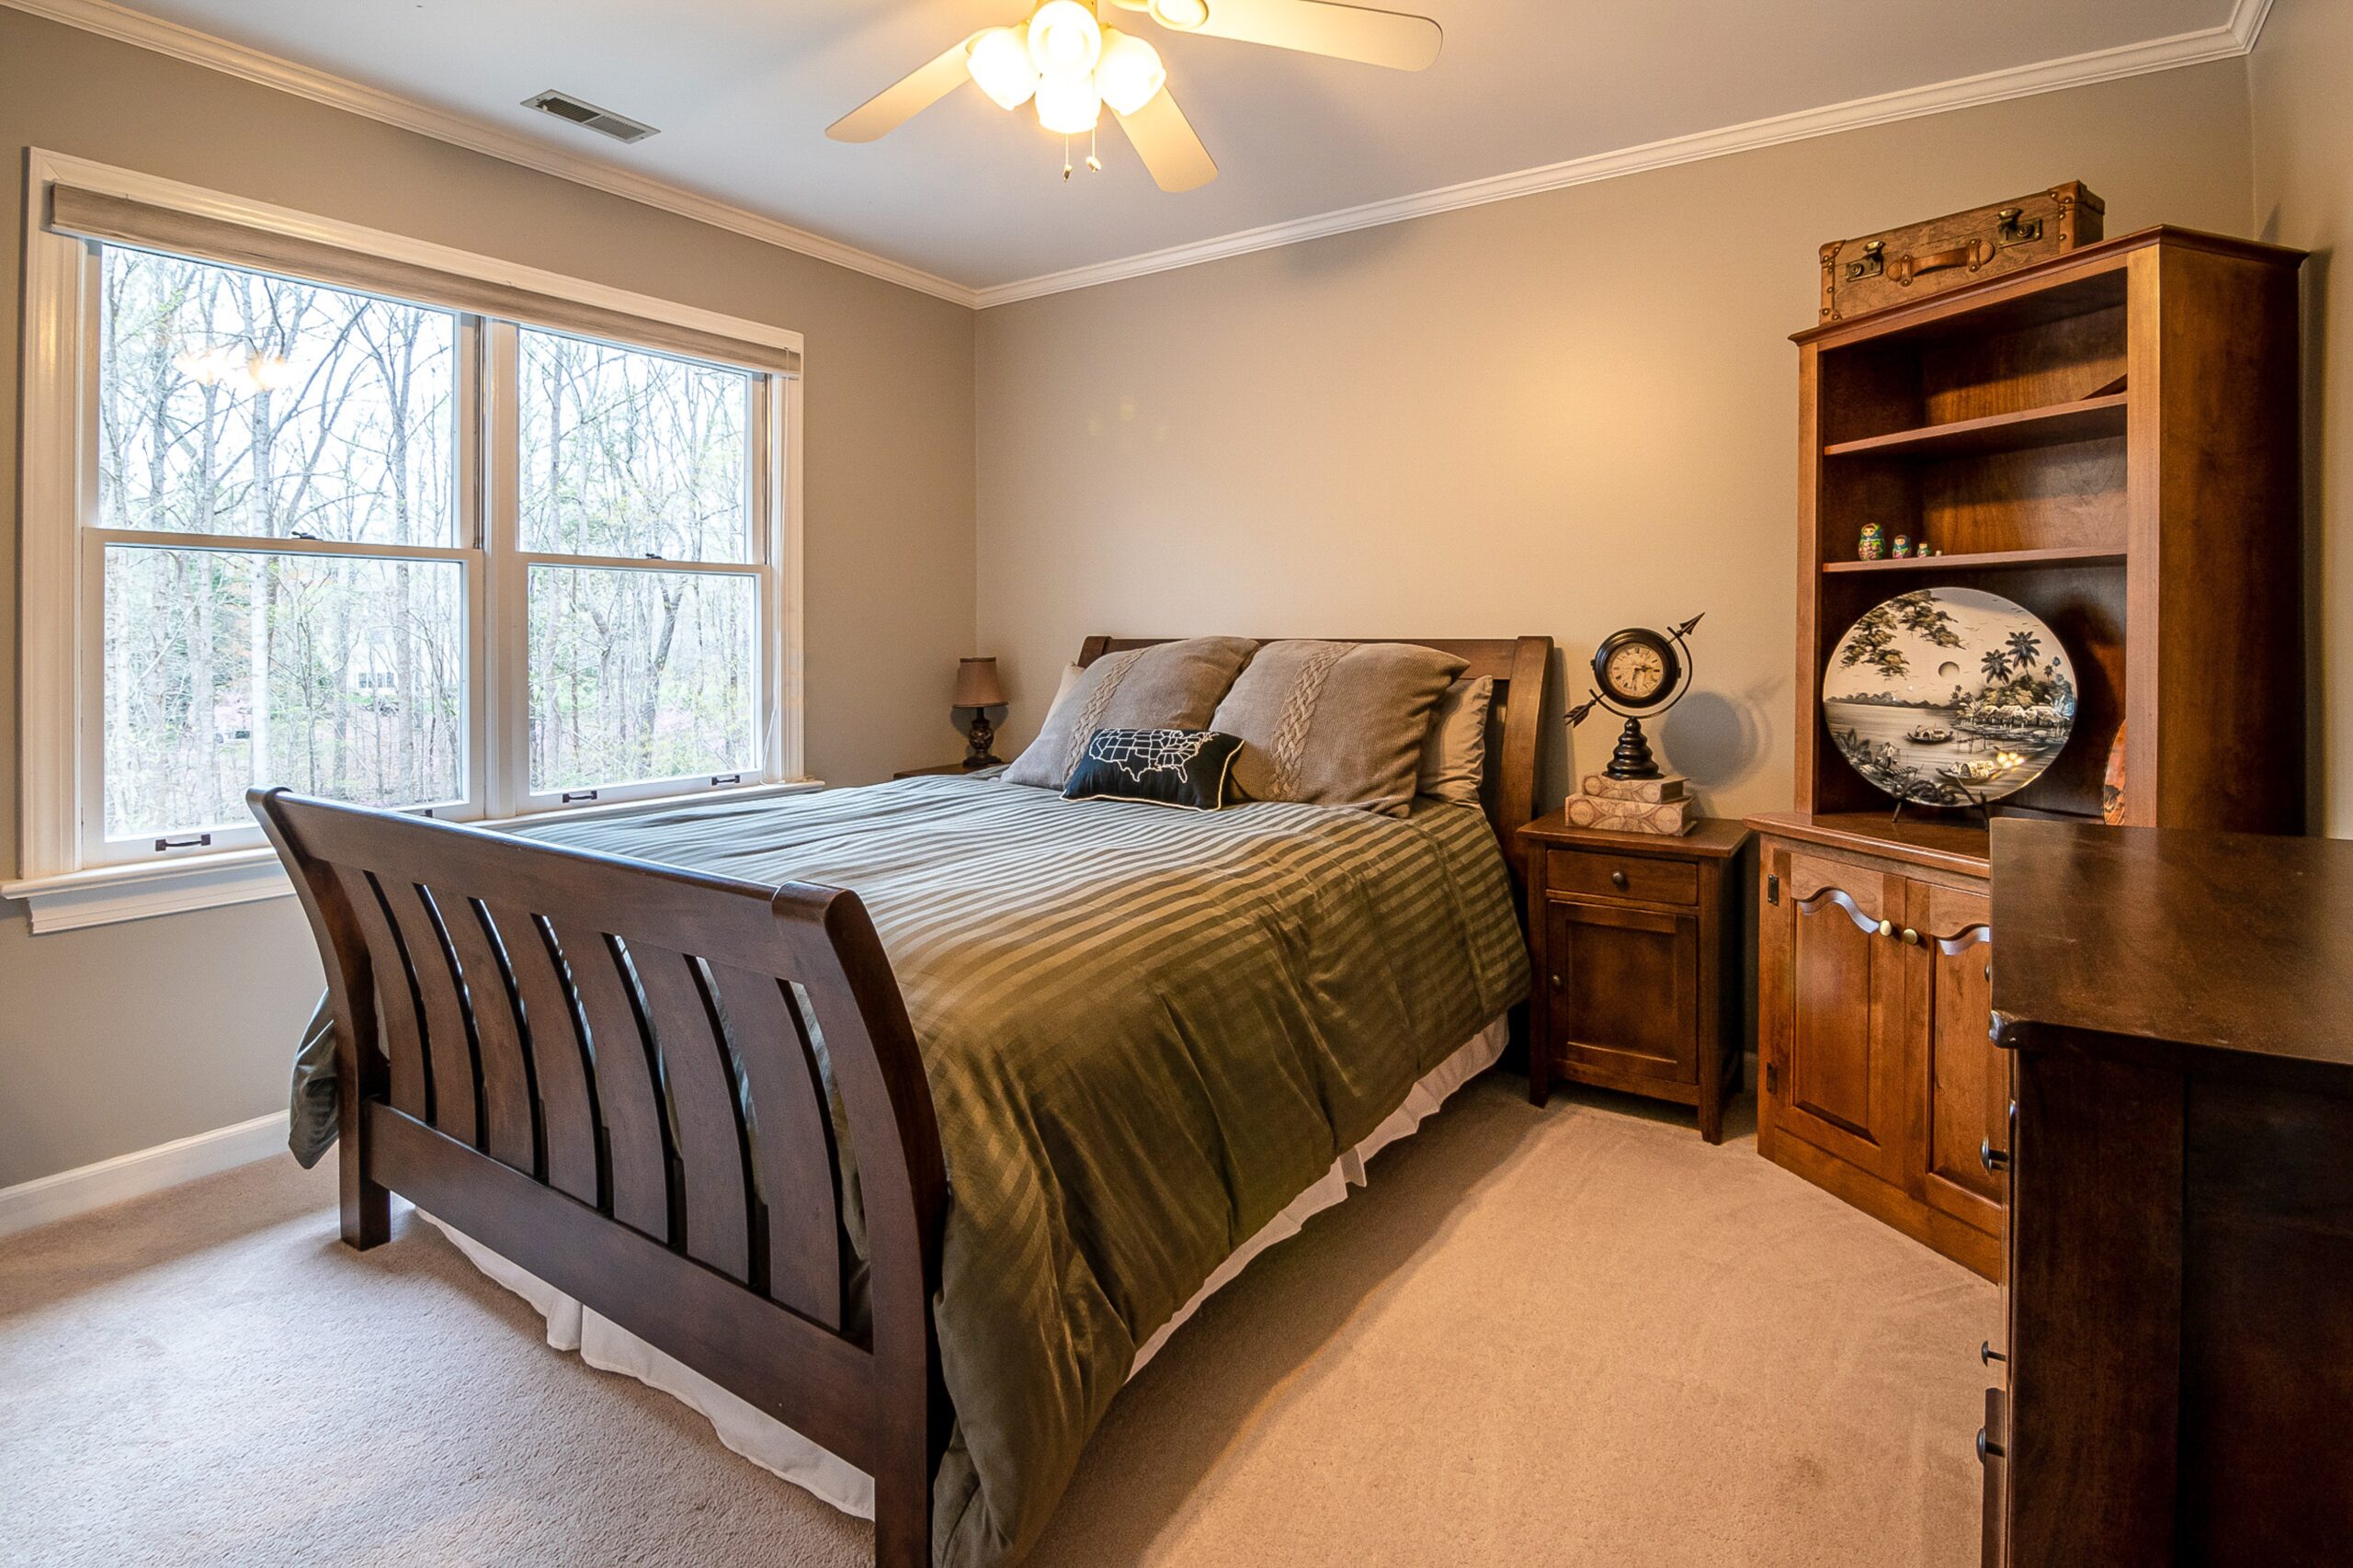 Łóżko 100x200 drewniane – idealne do małych przestrzeni